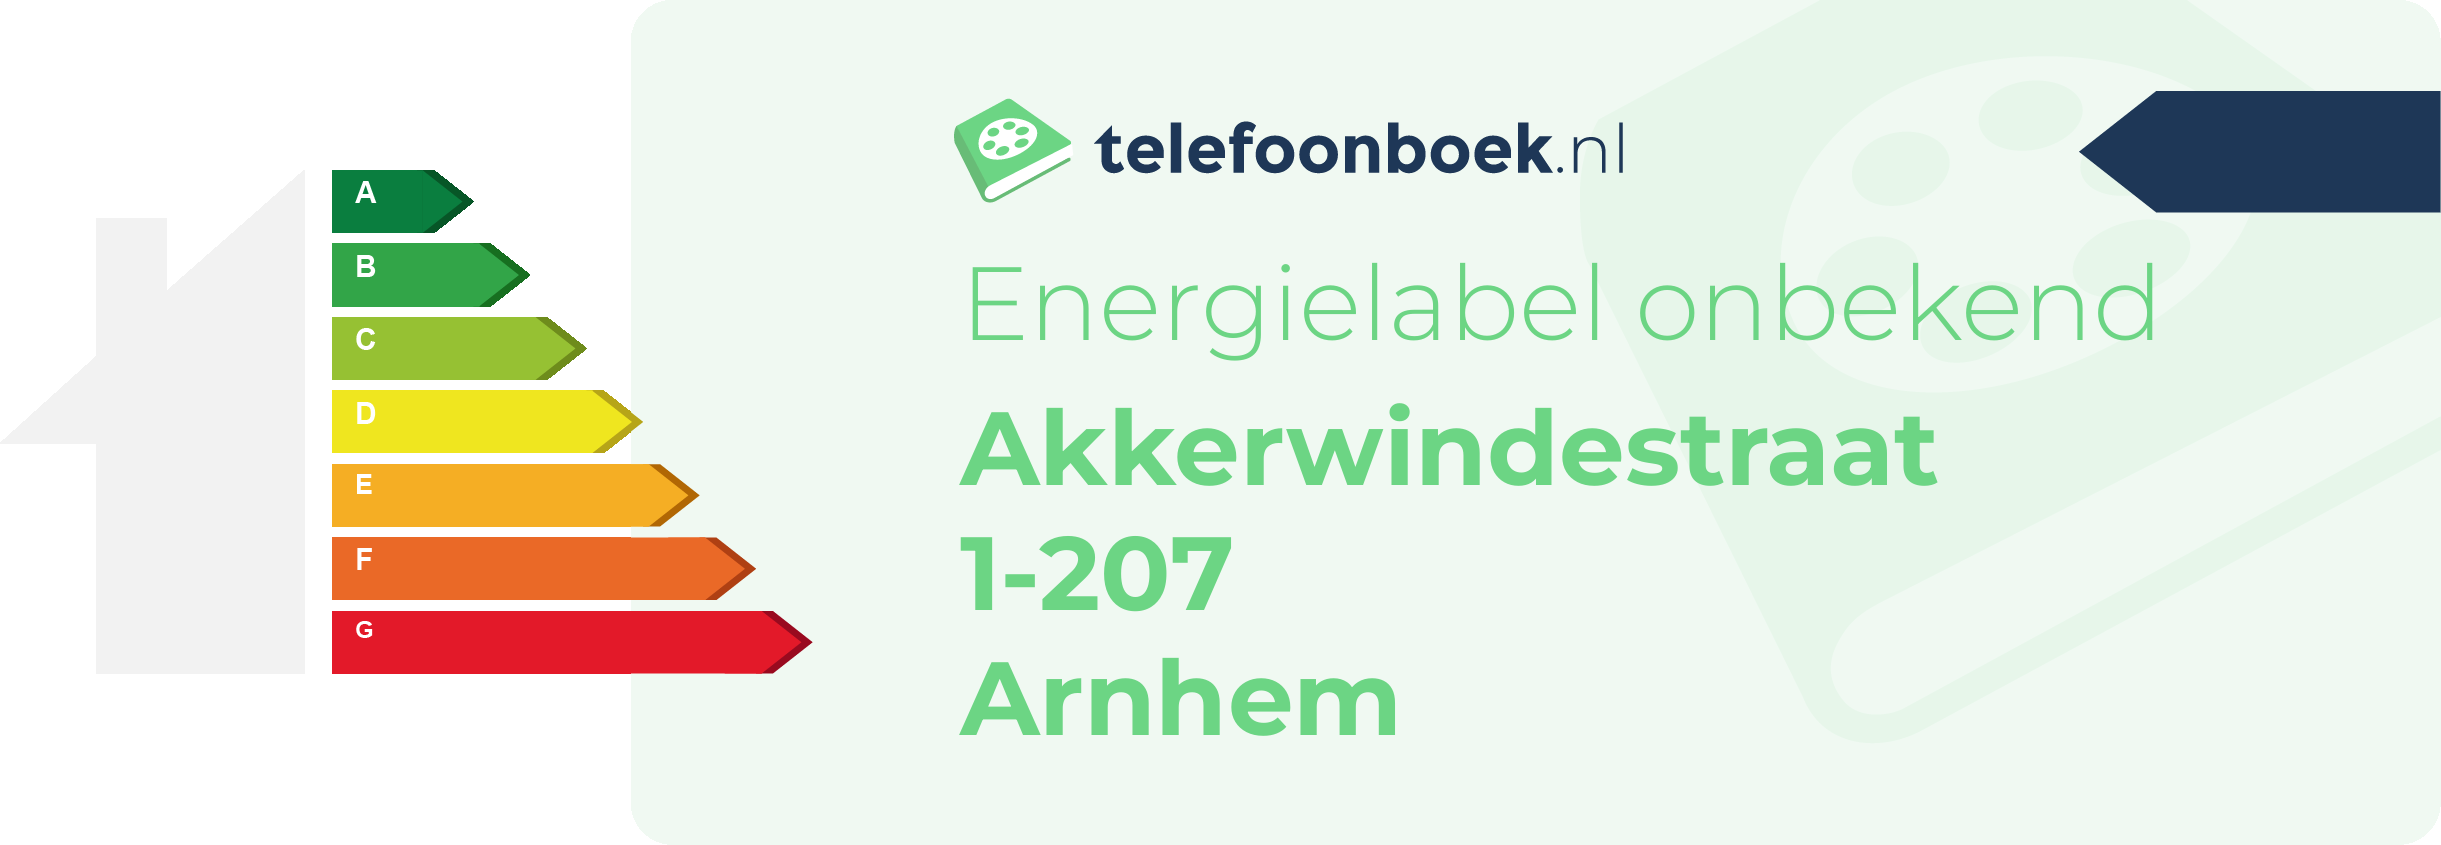 Energielabel Akkerwindestraat 1-207 Arnhem